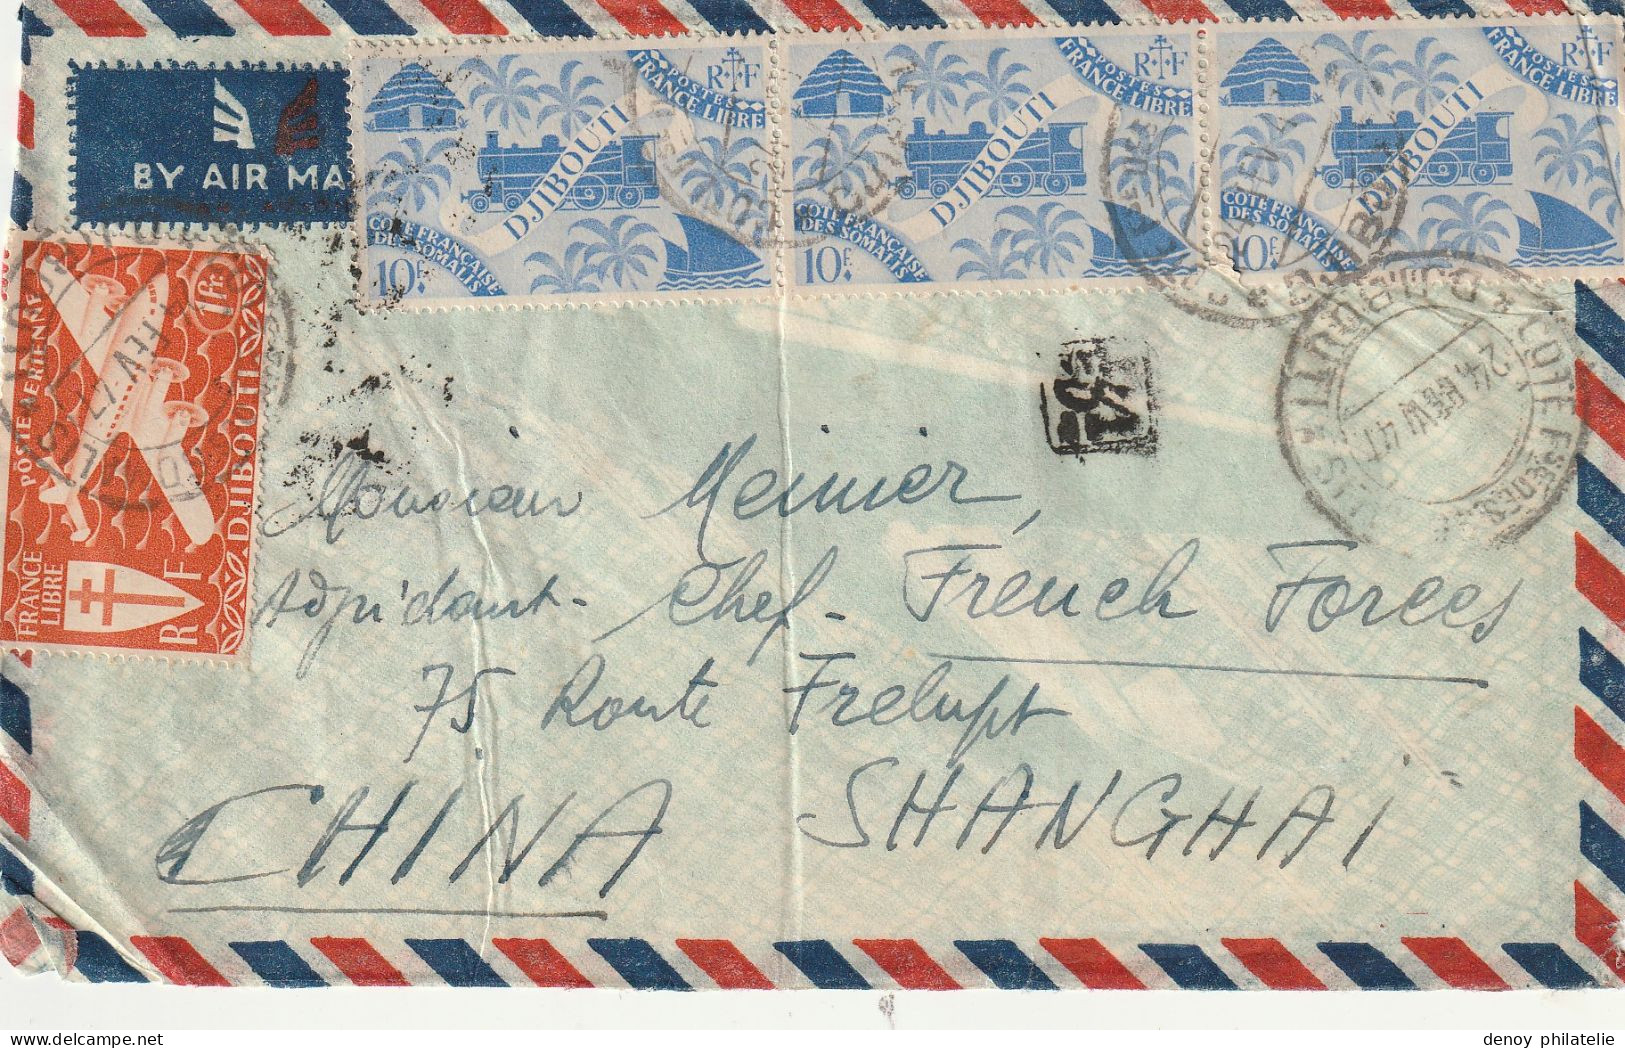 Lettre De Cote Des Somalis A Destination De Schanghai (chine )1947 - Briefe U. Dokumente